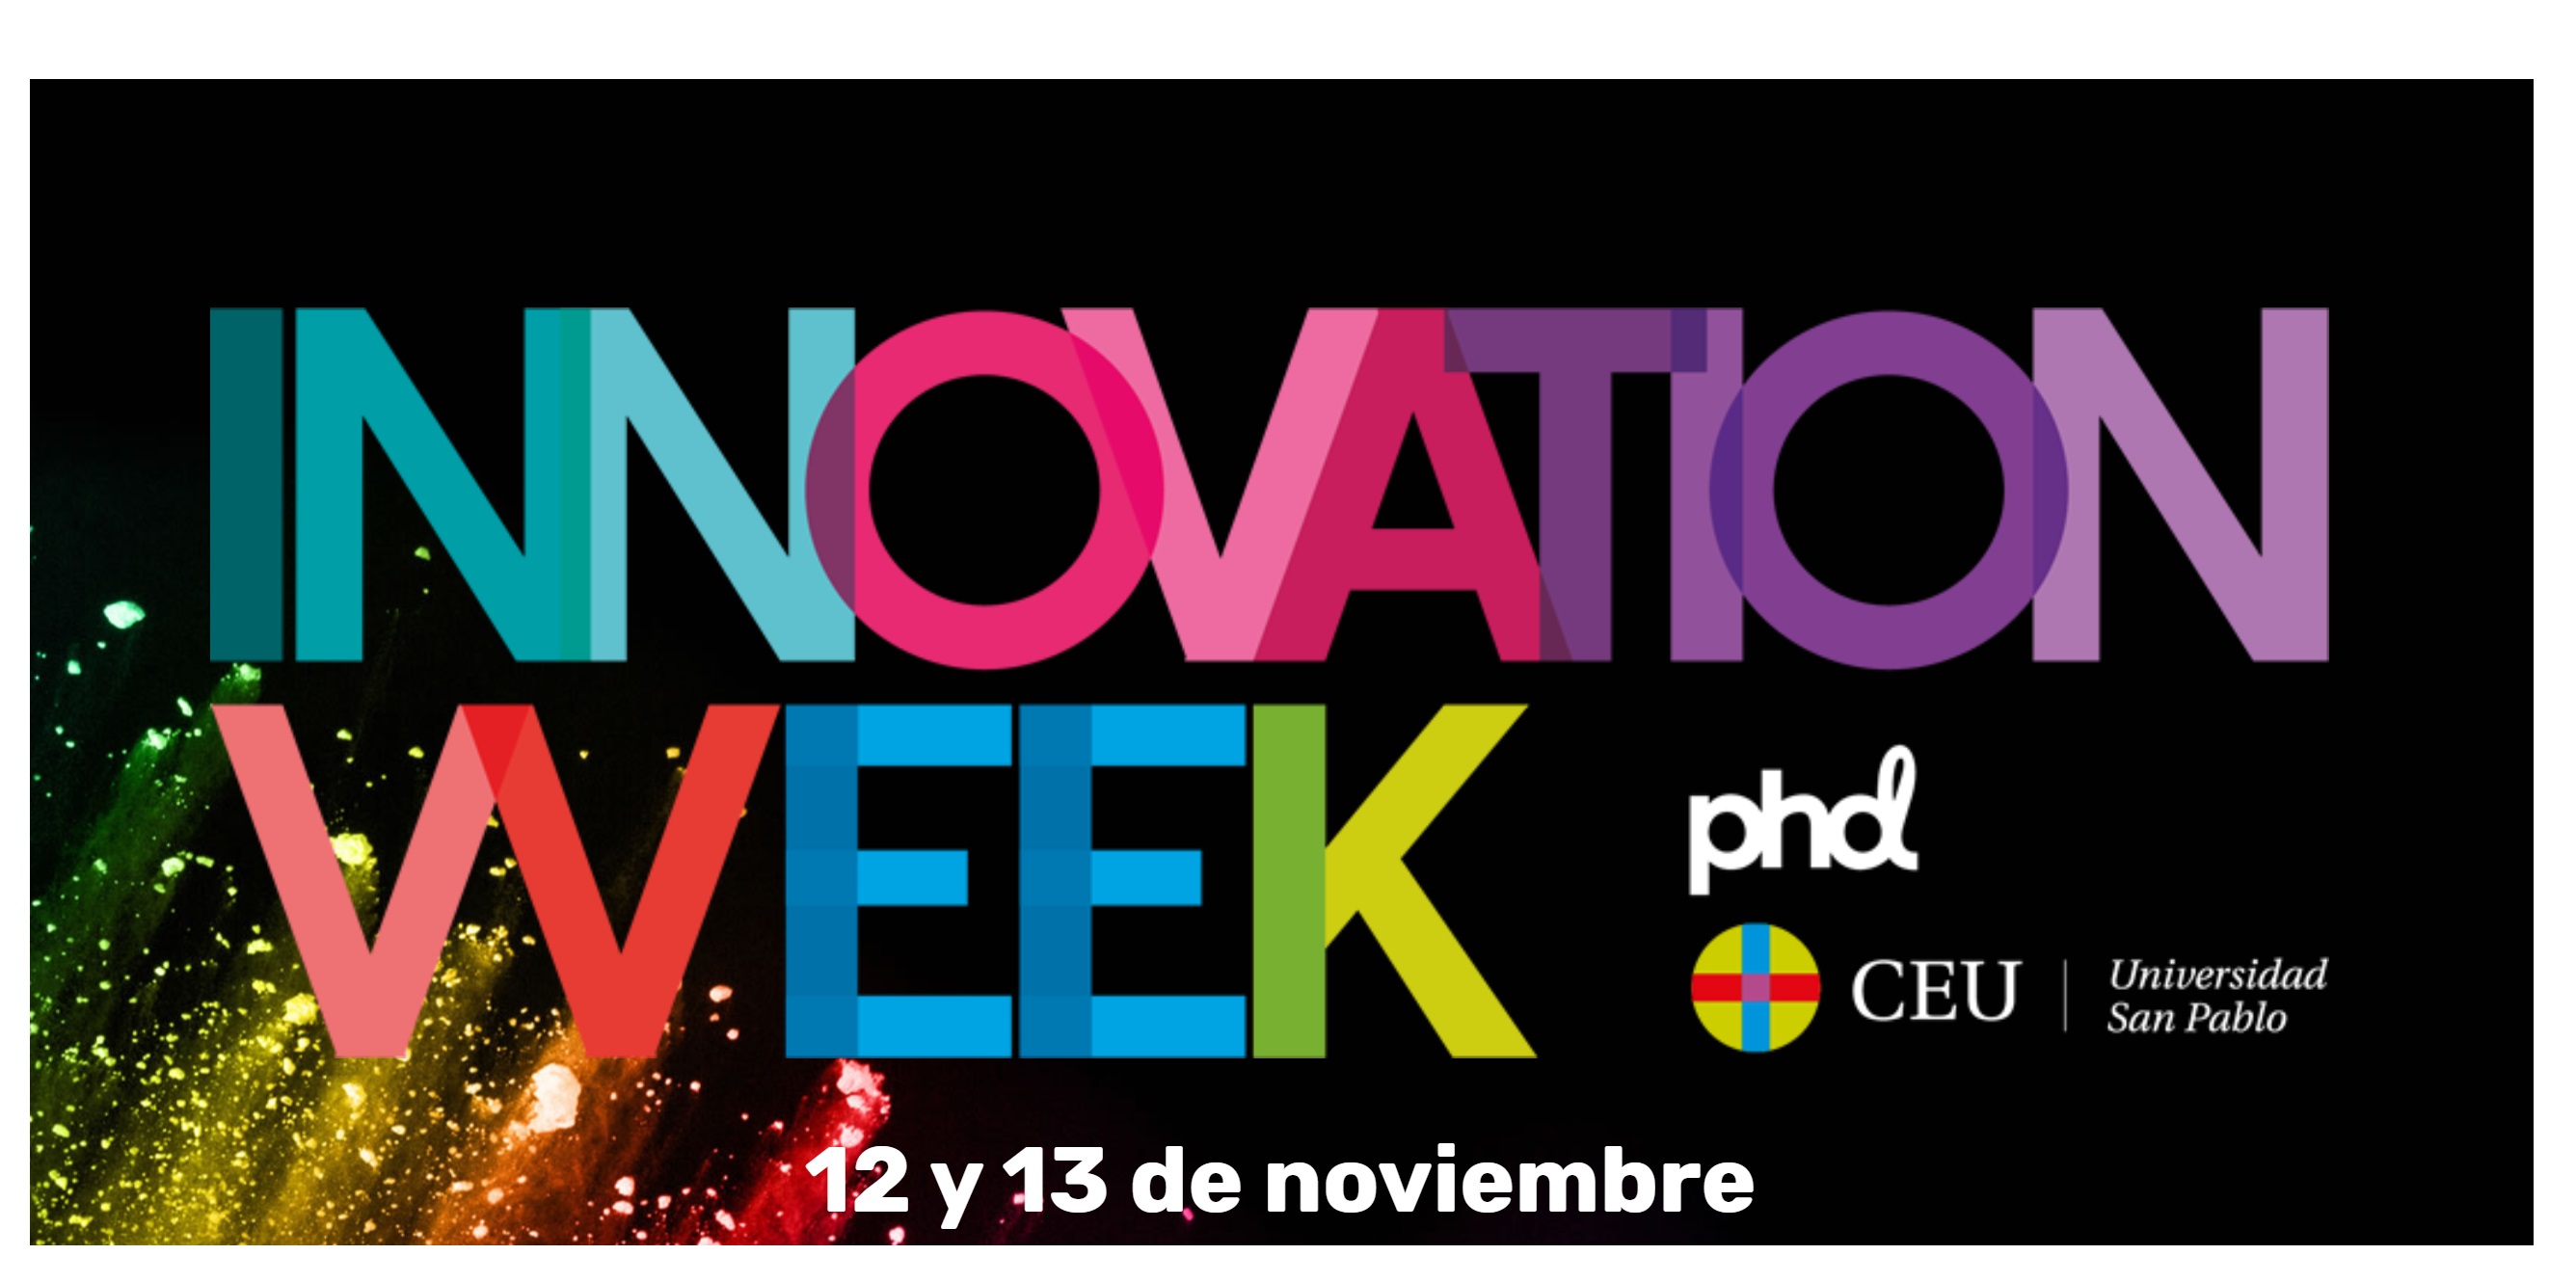 innovation week, phd, ceu, universidad san pablo, población, programapublicidad